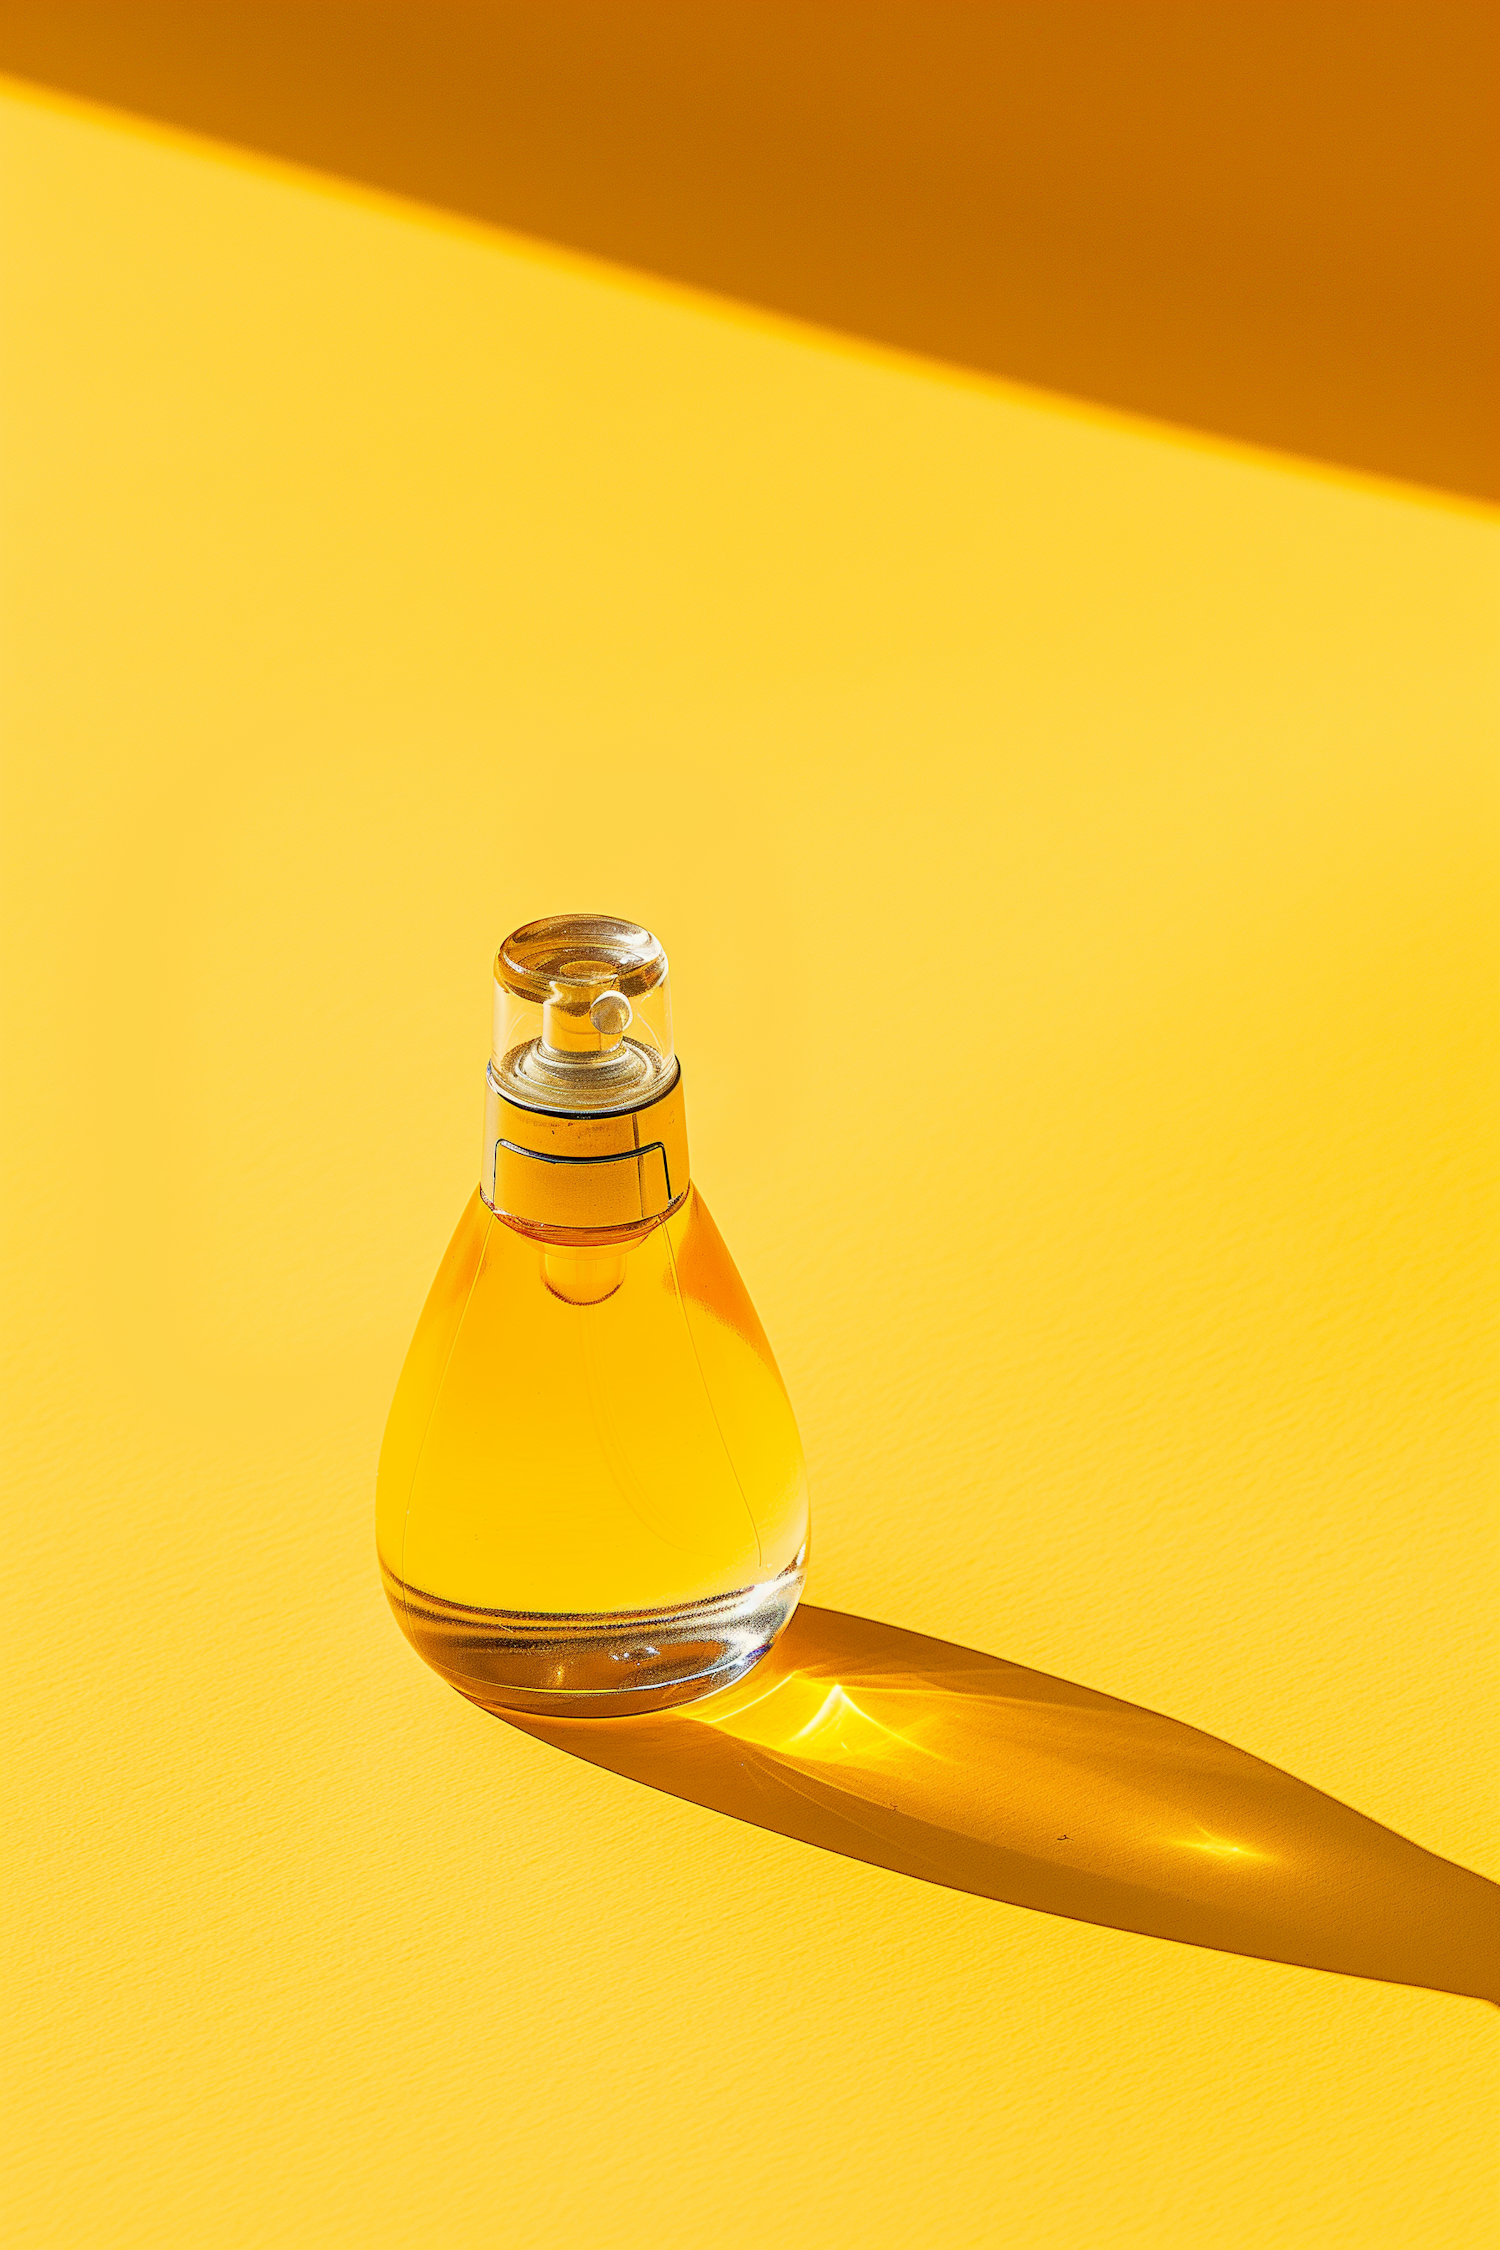 Elegant Perfume Bottle on Yellow Background